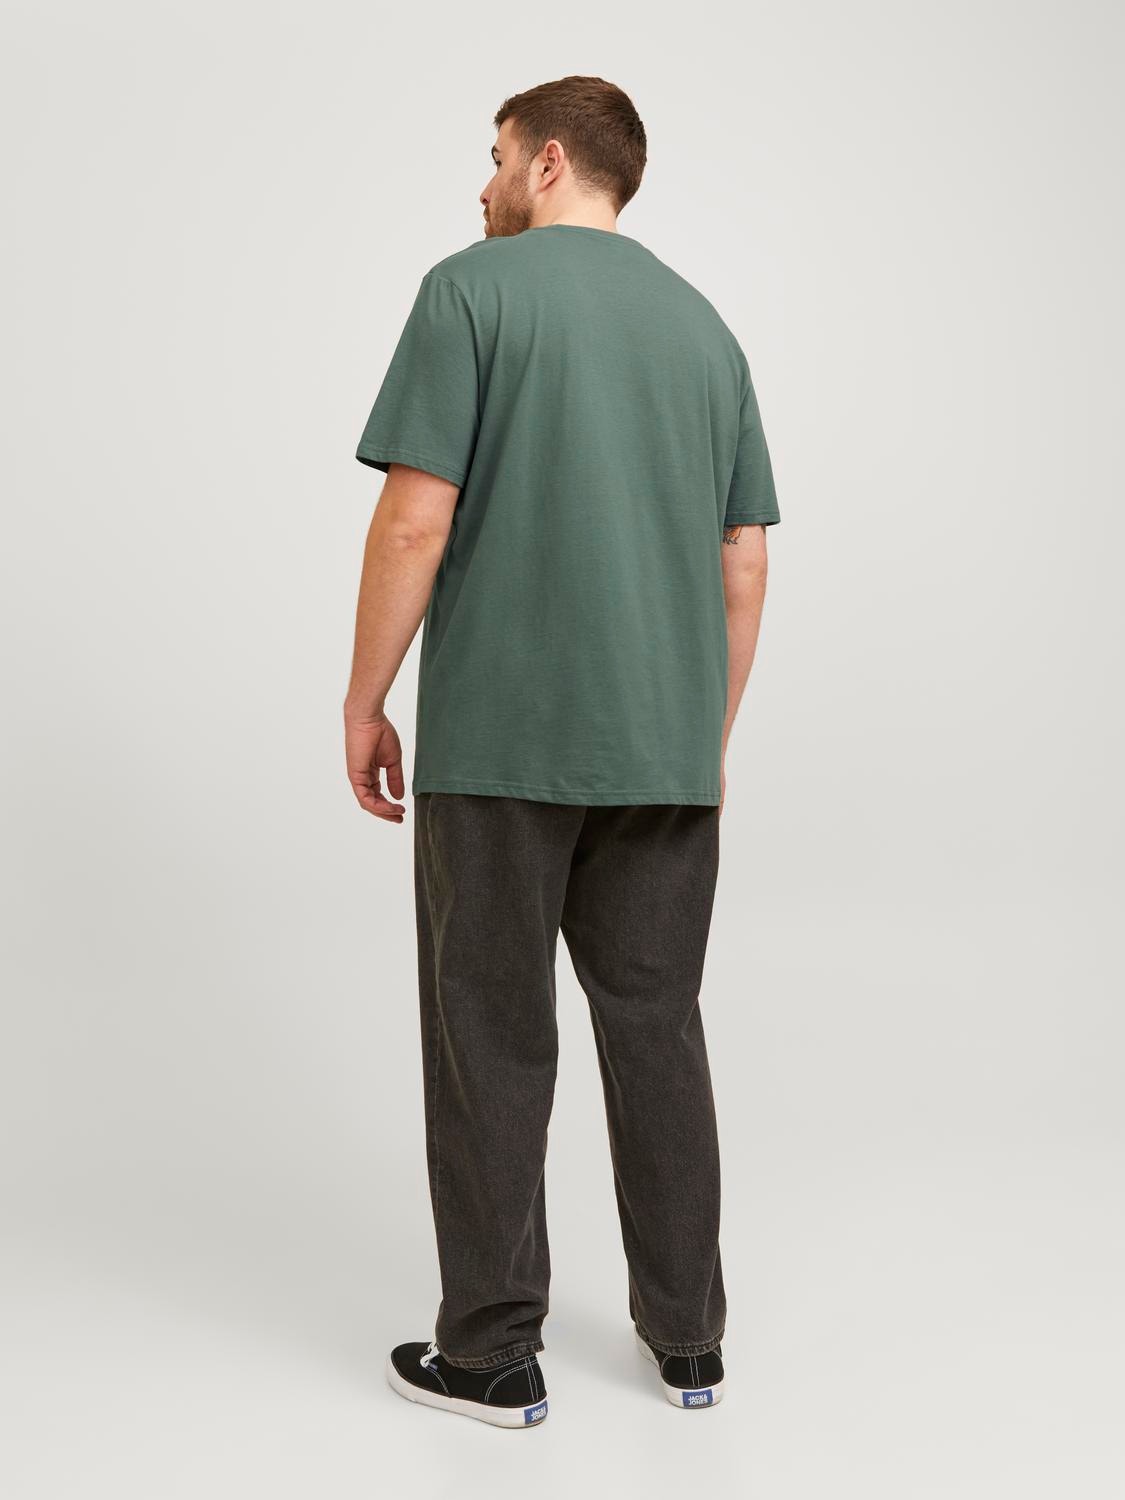 Jack & Jones Plus Size Bedrukt T-shirt -Laurel Wreath - 12257509